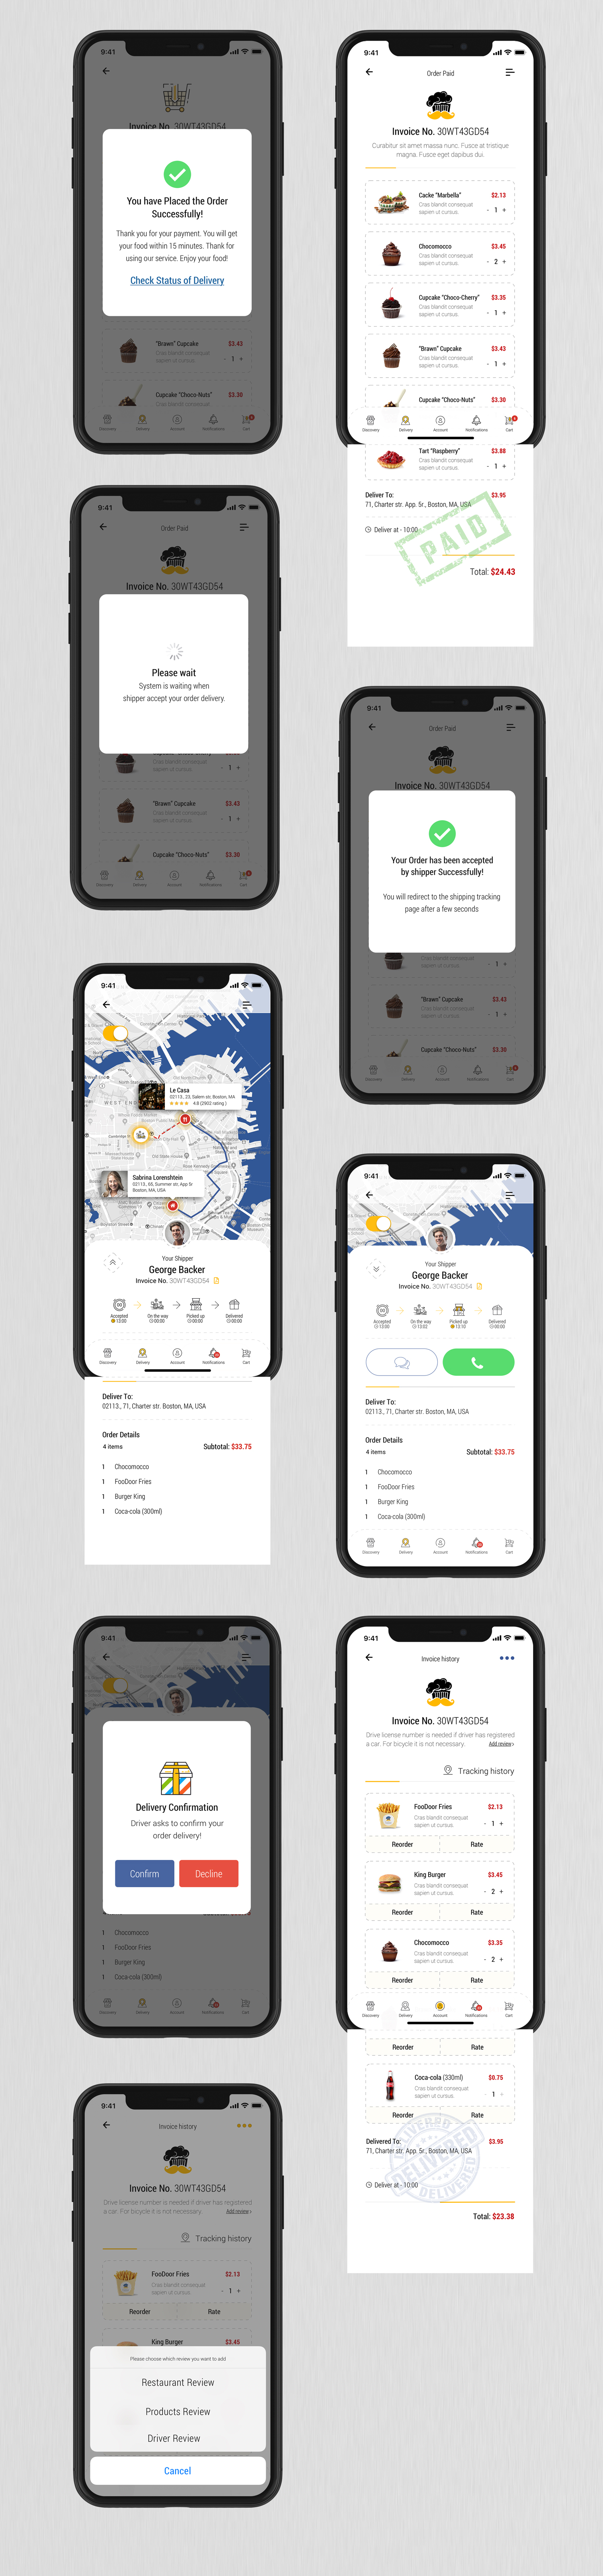 Dobule - Food Delivery UI Kit for Mobile App - 18